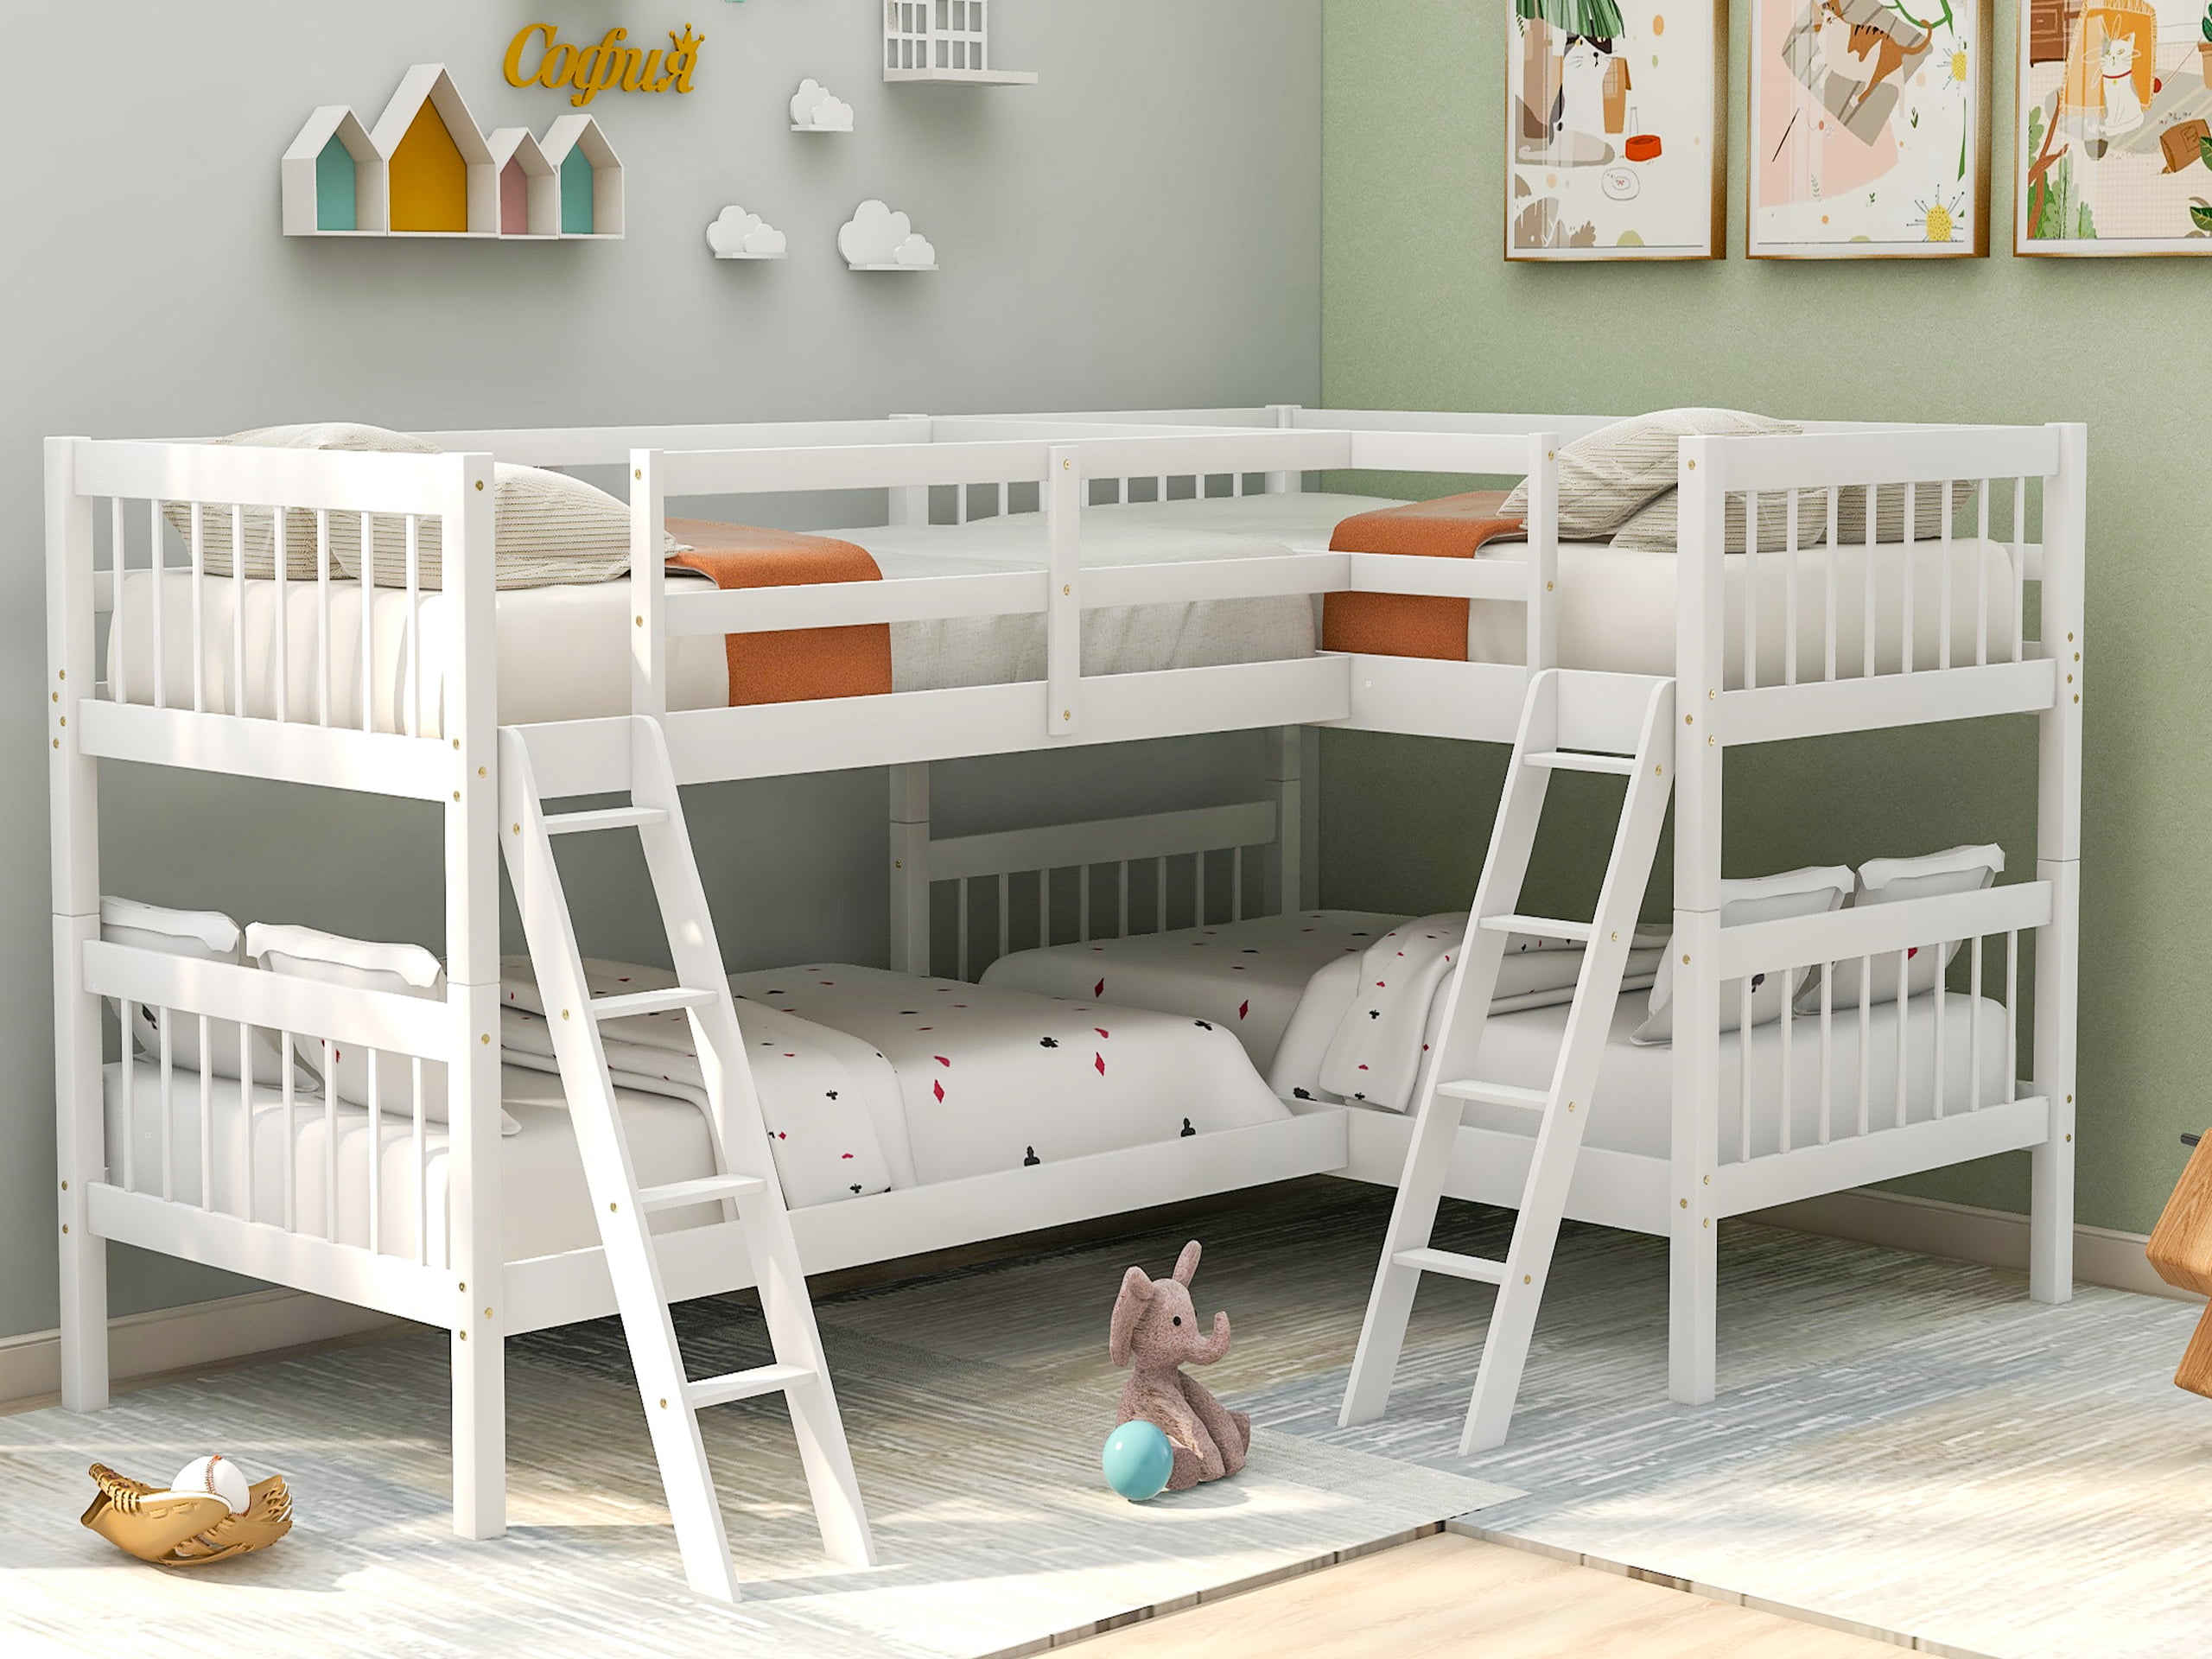 bunk & loft beds kids bedroom furniture baby & kids